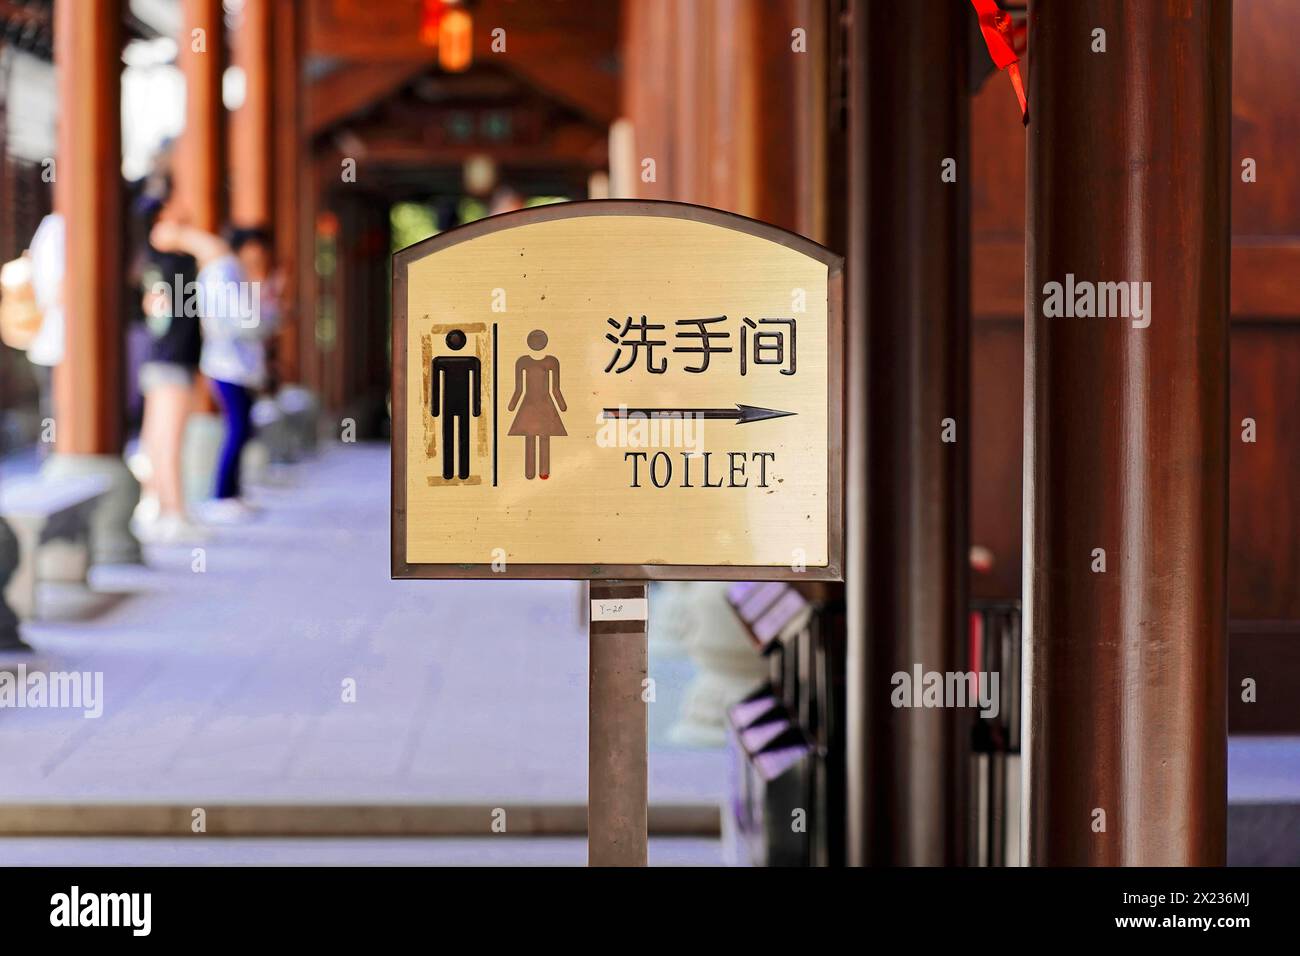 Tempio del Buddha di Giada, Shanghai, semplice insegna della toilette con pittogrammi e caratteri cinesi, Shanghai, Cina Foto Stock